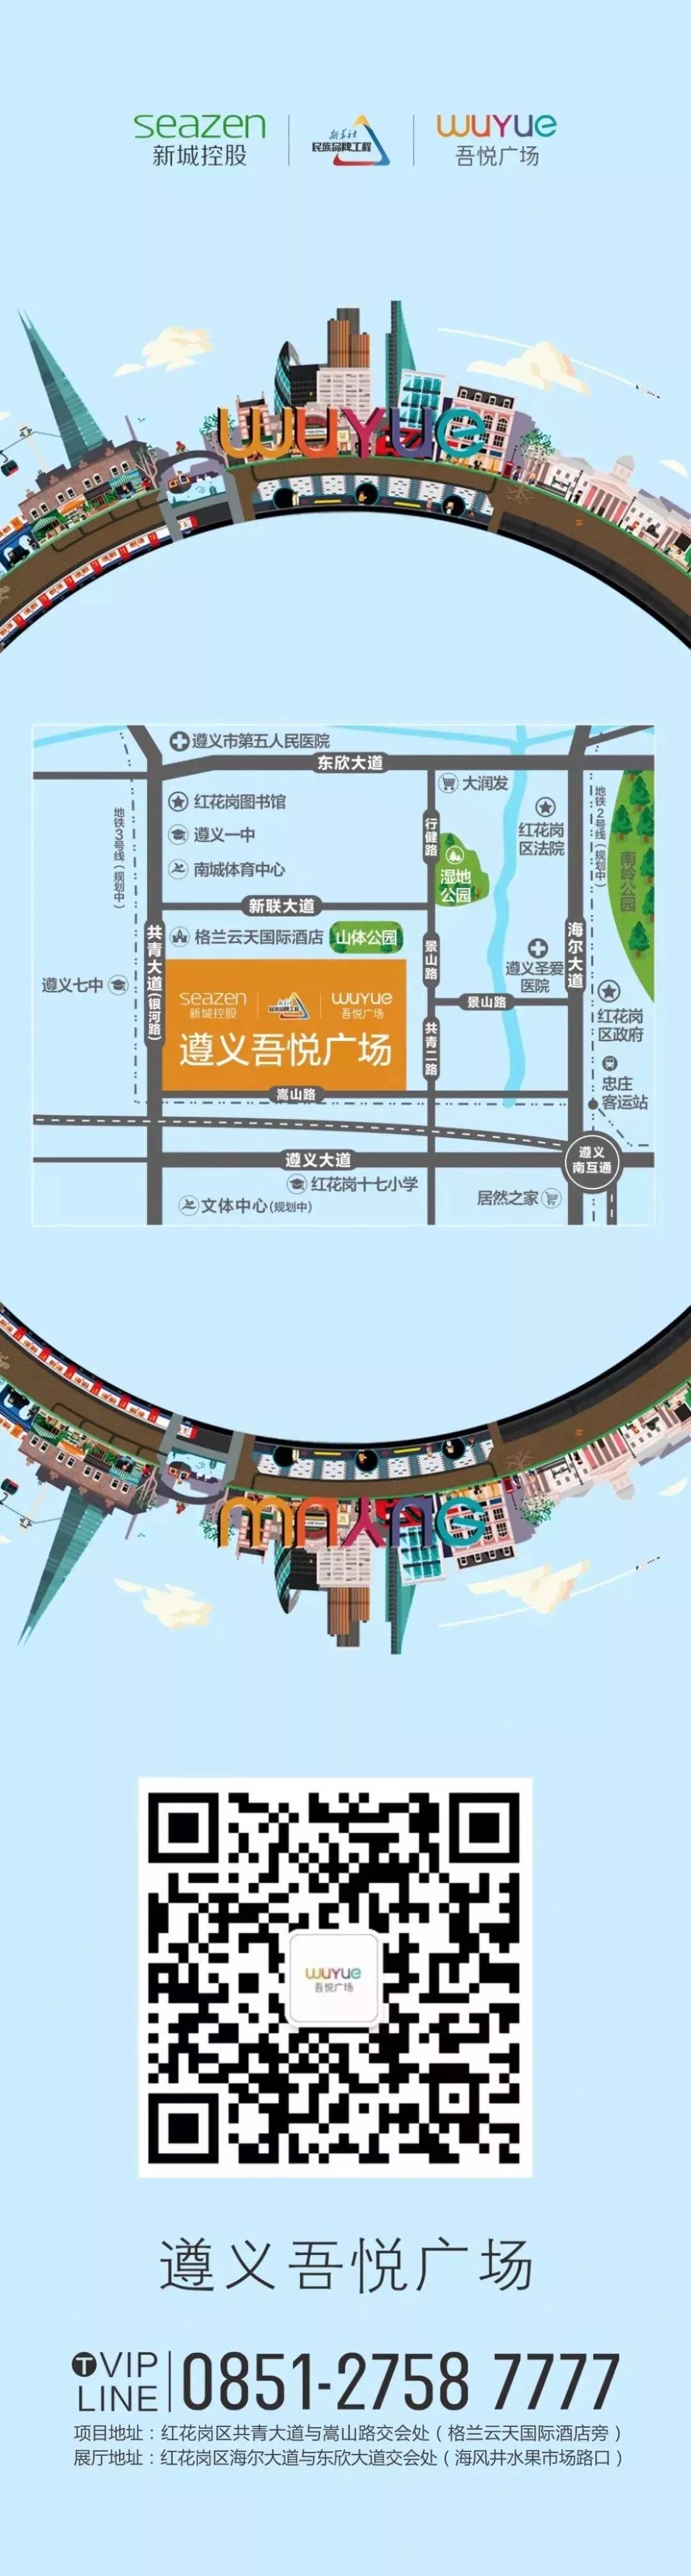 盛况空前！遵义新城吾悦广场城市展厅在万众瞩目中盛大开放！